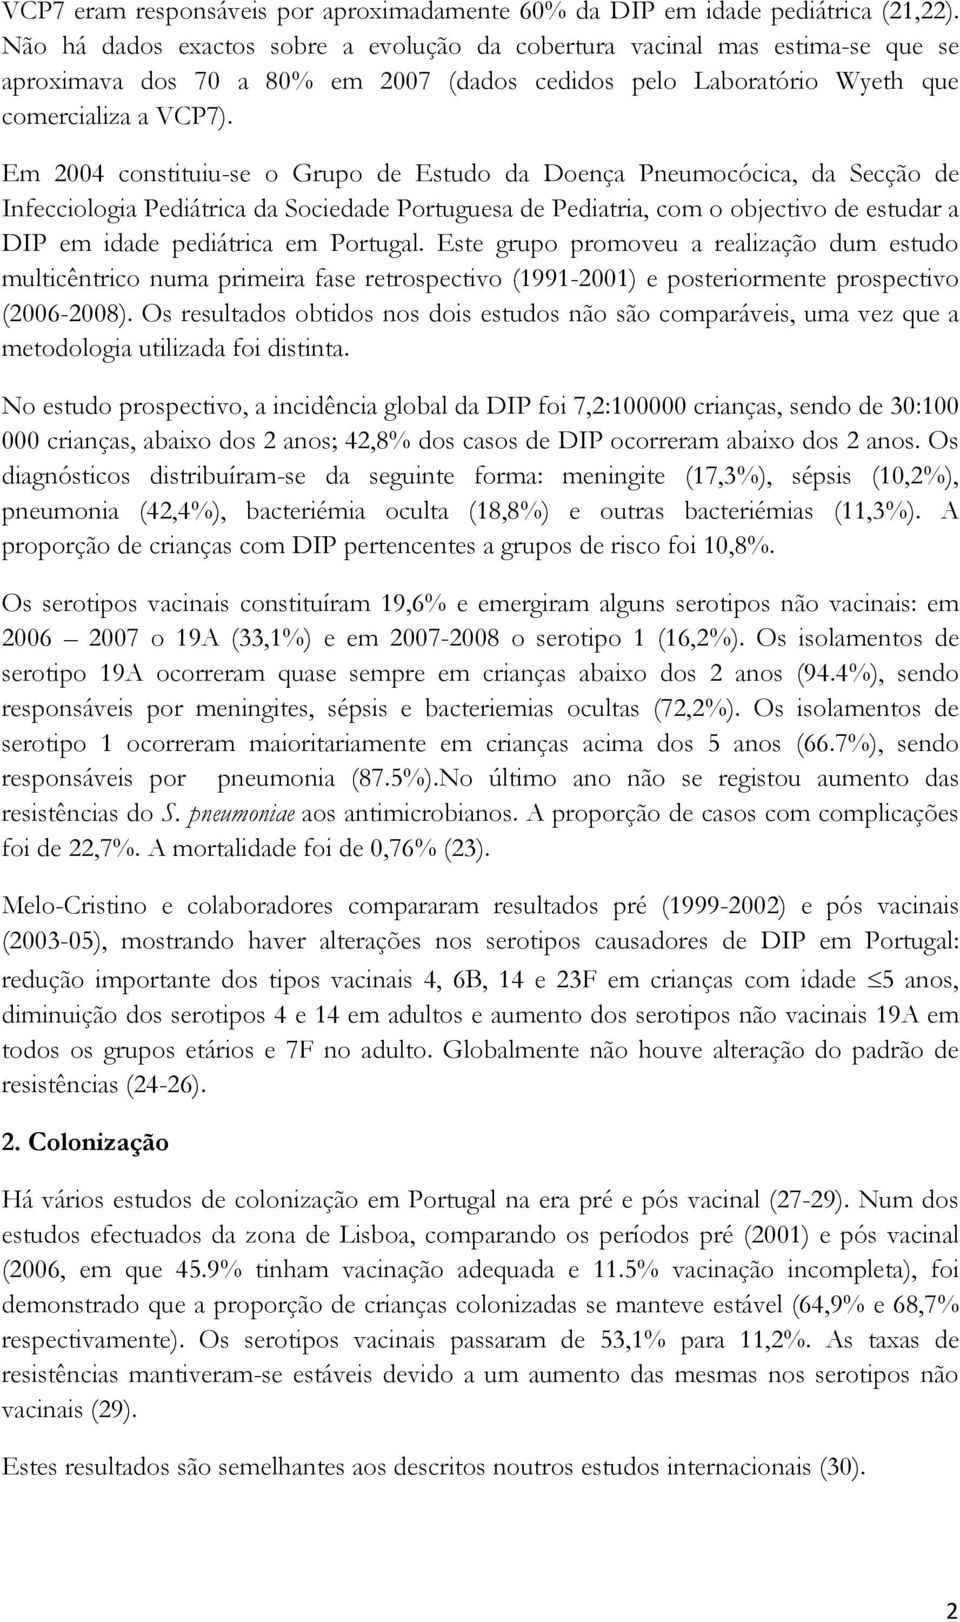 Em 2004 constituiu-se o Grupo de Estudo da Doença Pneumocócica, da Secção de Infecciologia Pediátrica da Sociedade Portuguesa de Pediatria, com o objectivo de estudar a DIP em idade pediátrica em